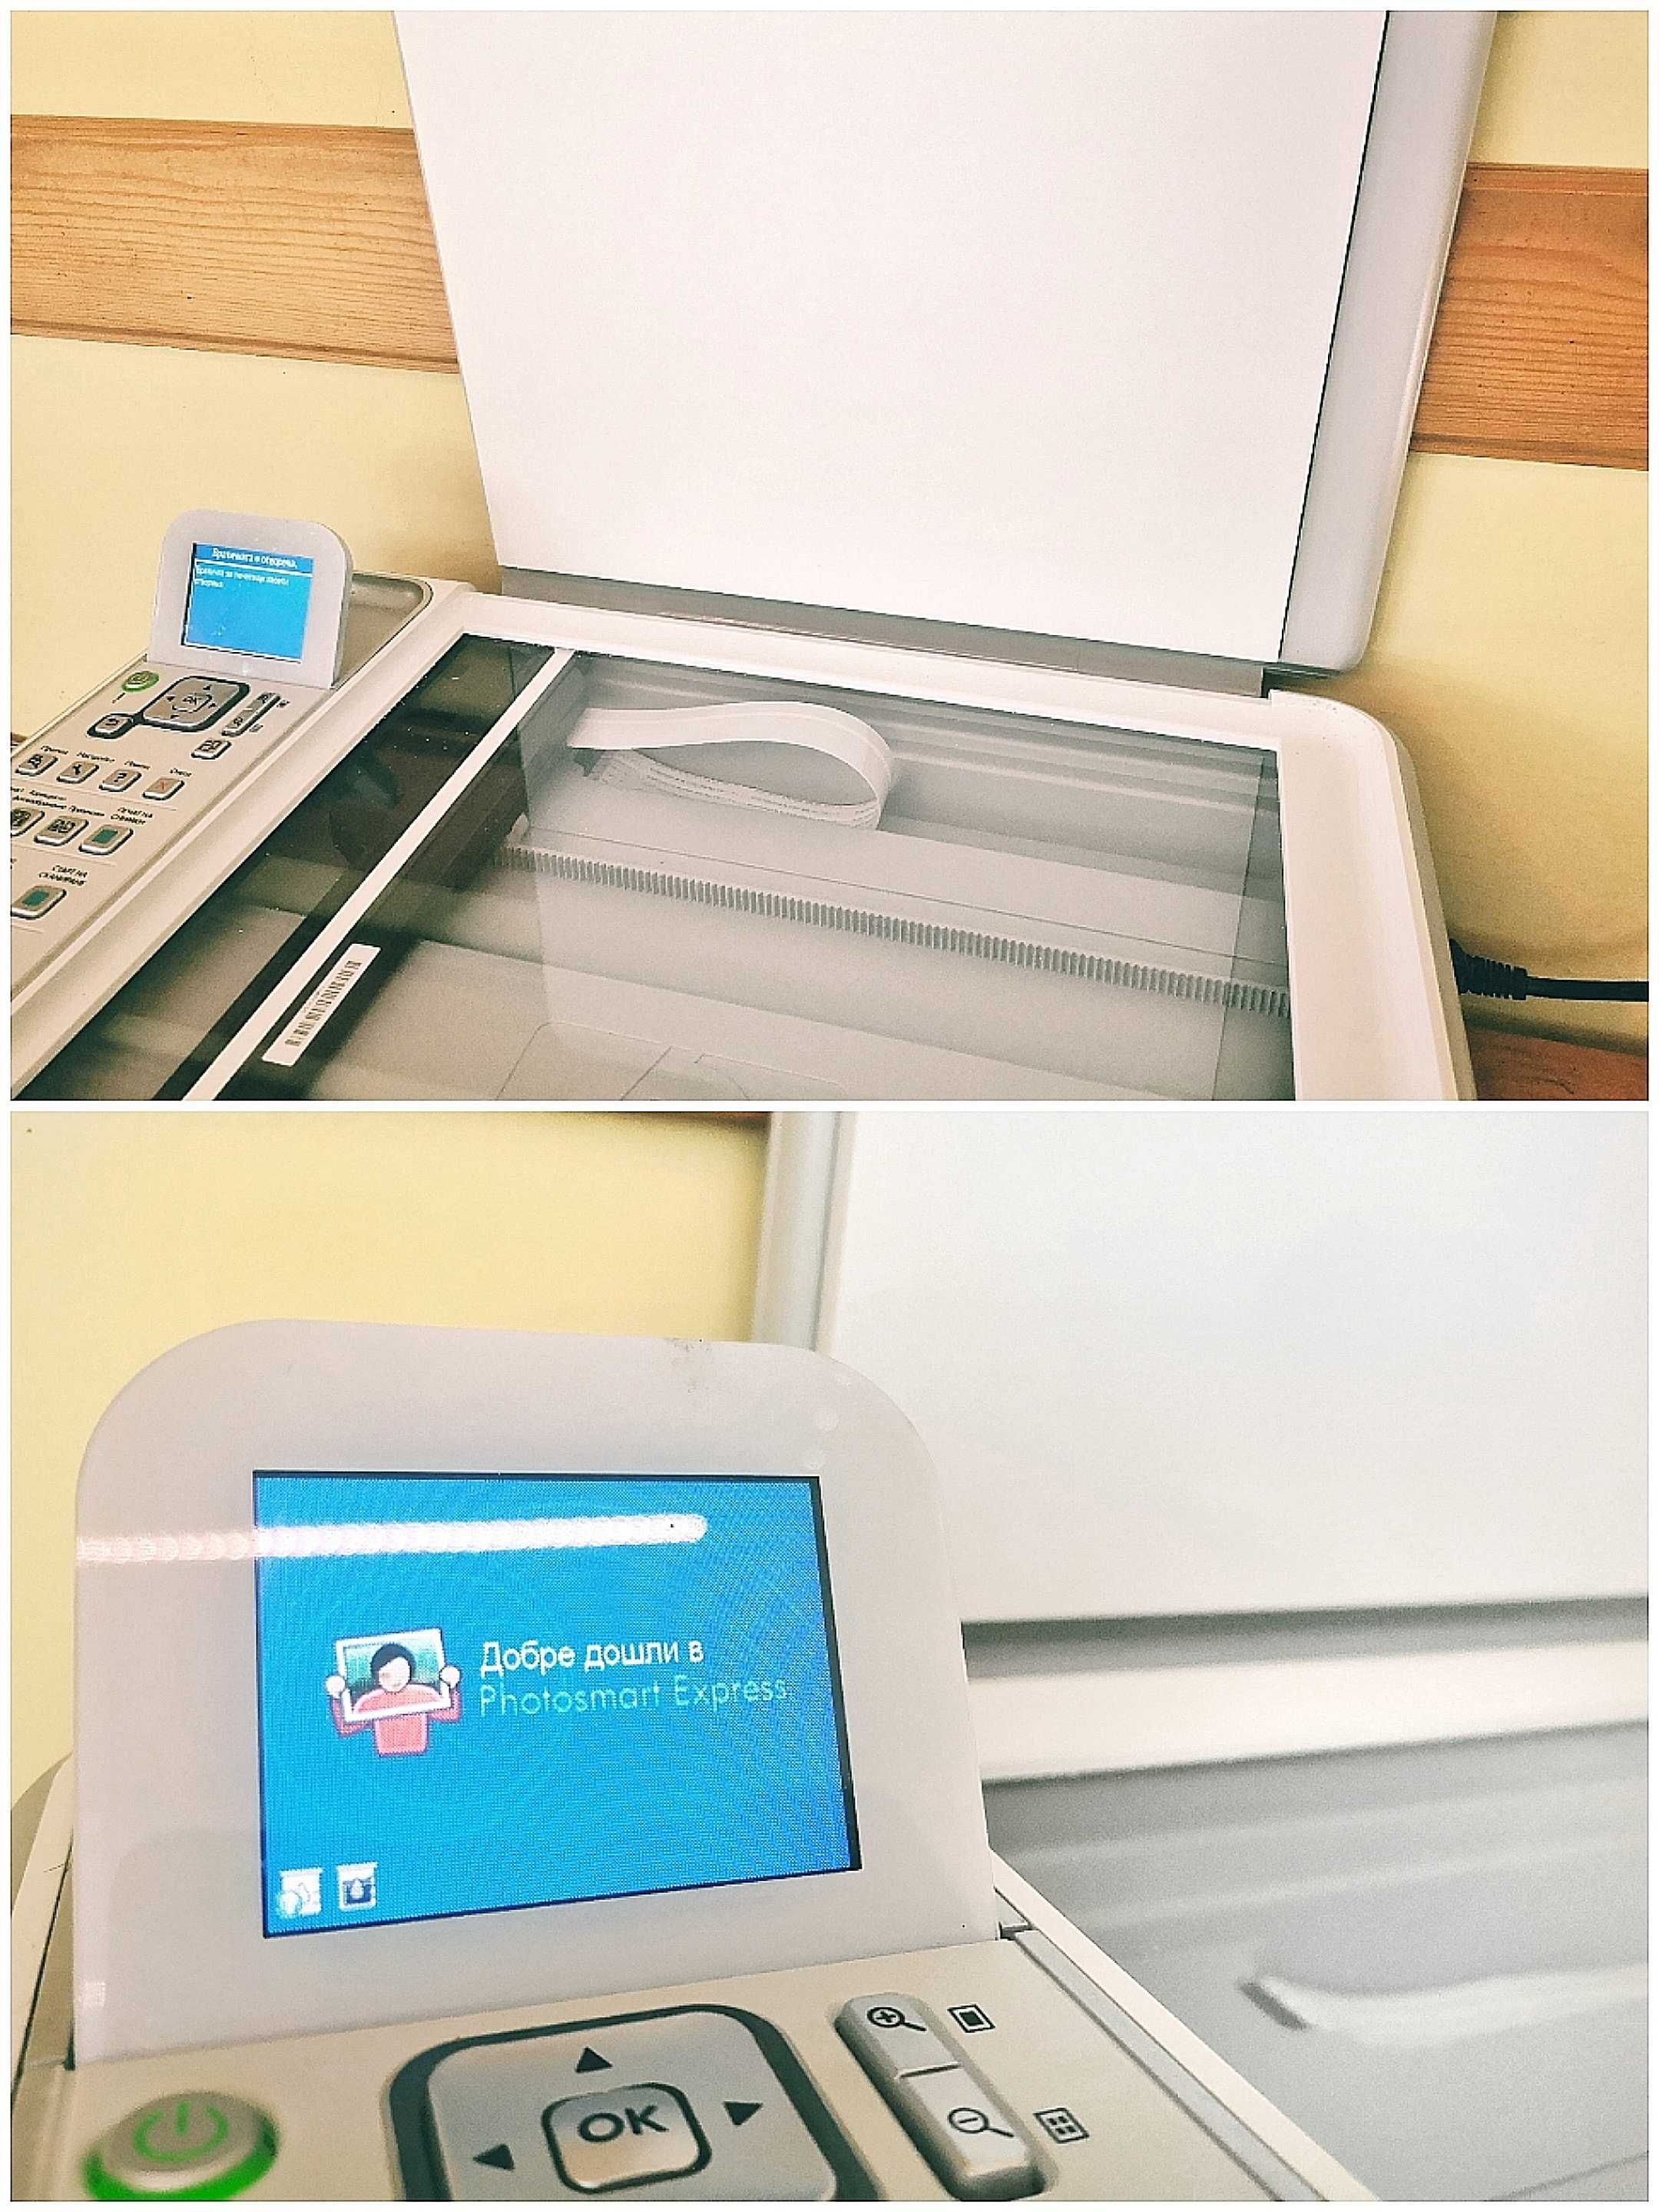 HP C4180 / мастилоструен принтер скенер копир / състояние: отлично